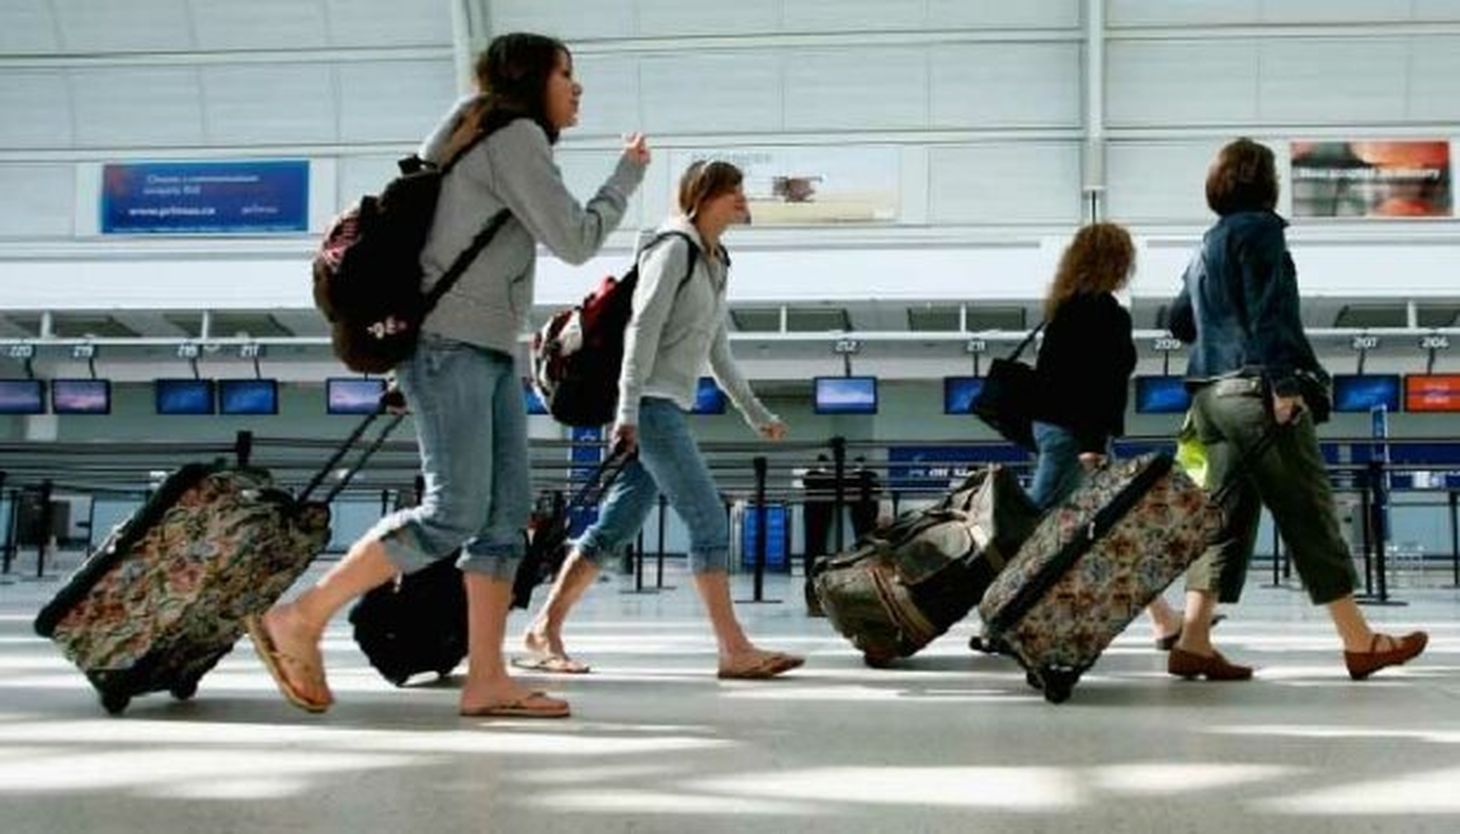 Приезд из границы. Туристы в аэропорту. Люди с чемоданами в аэропорту. Путешественник в аэропорту. Отдыхающие в аэропорту.